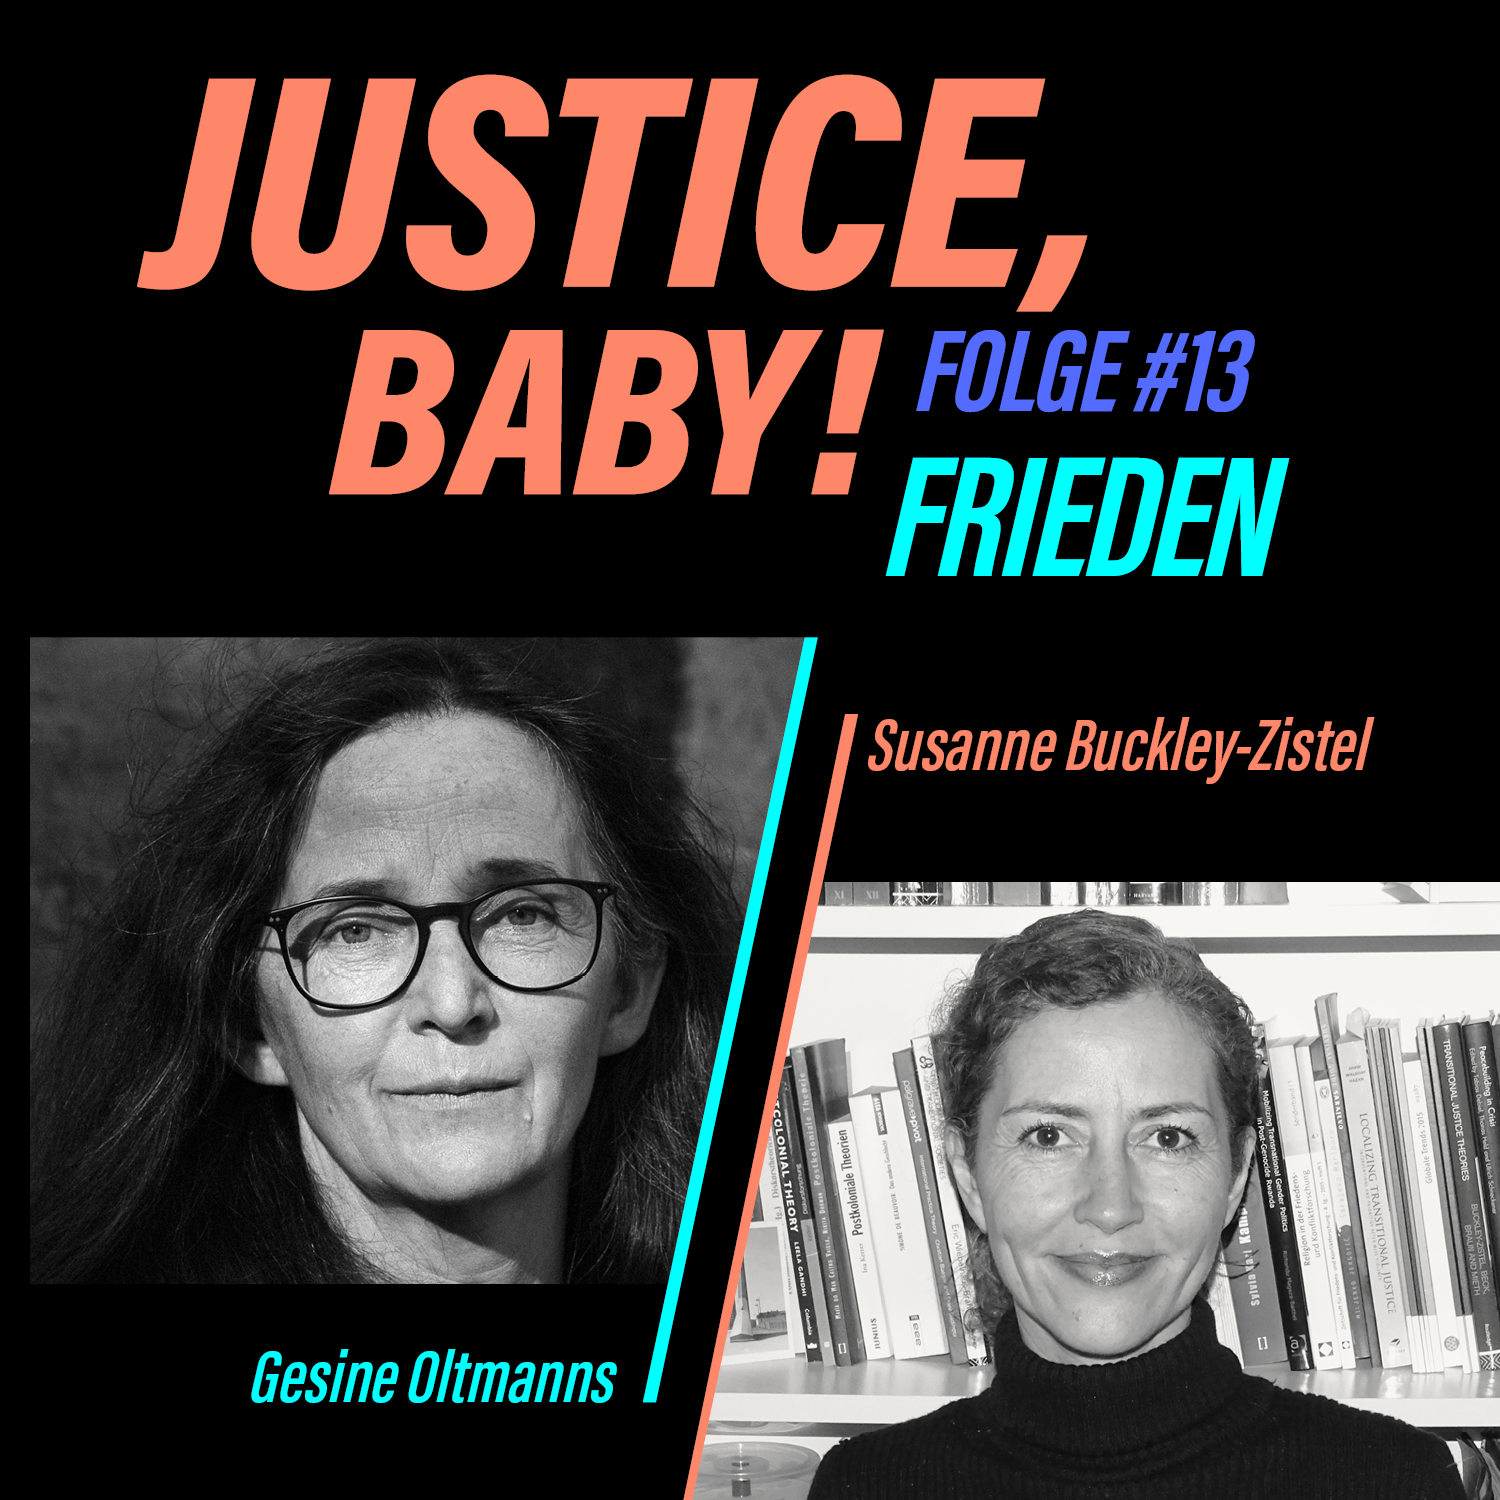 Grafik mit dem Titel "Justice, Baby!" Folge 13 Frieden. Darunter die schwarz-weiß Portrait-Bilder von Gesine Oltmanns und Susanne Buckley-Zistel